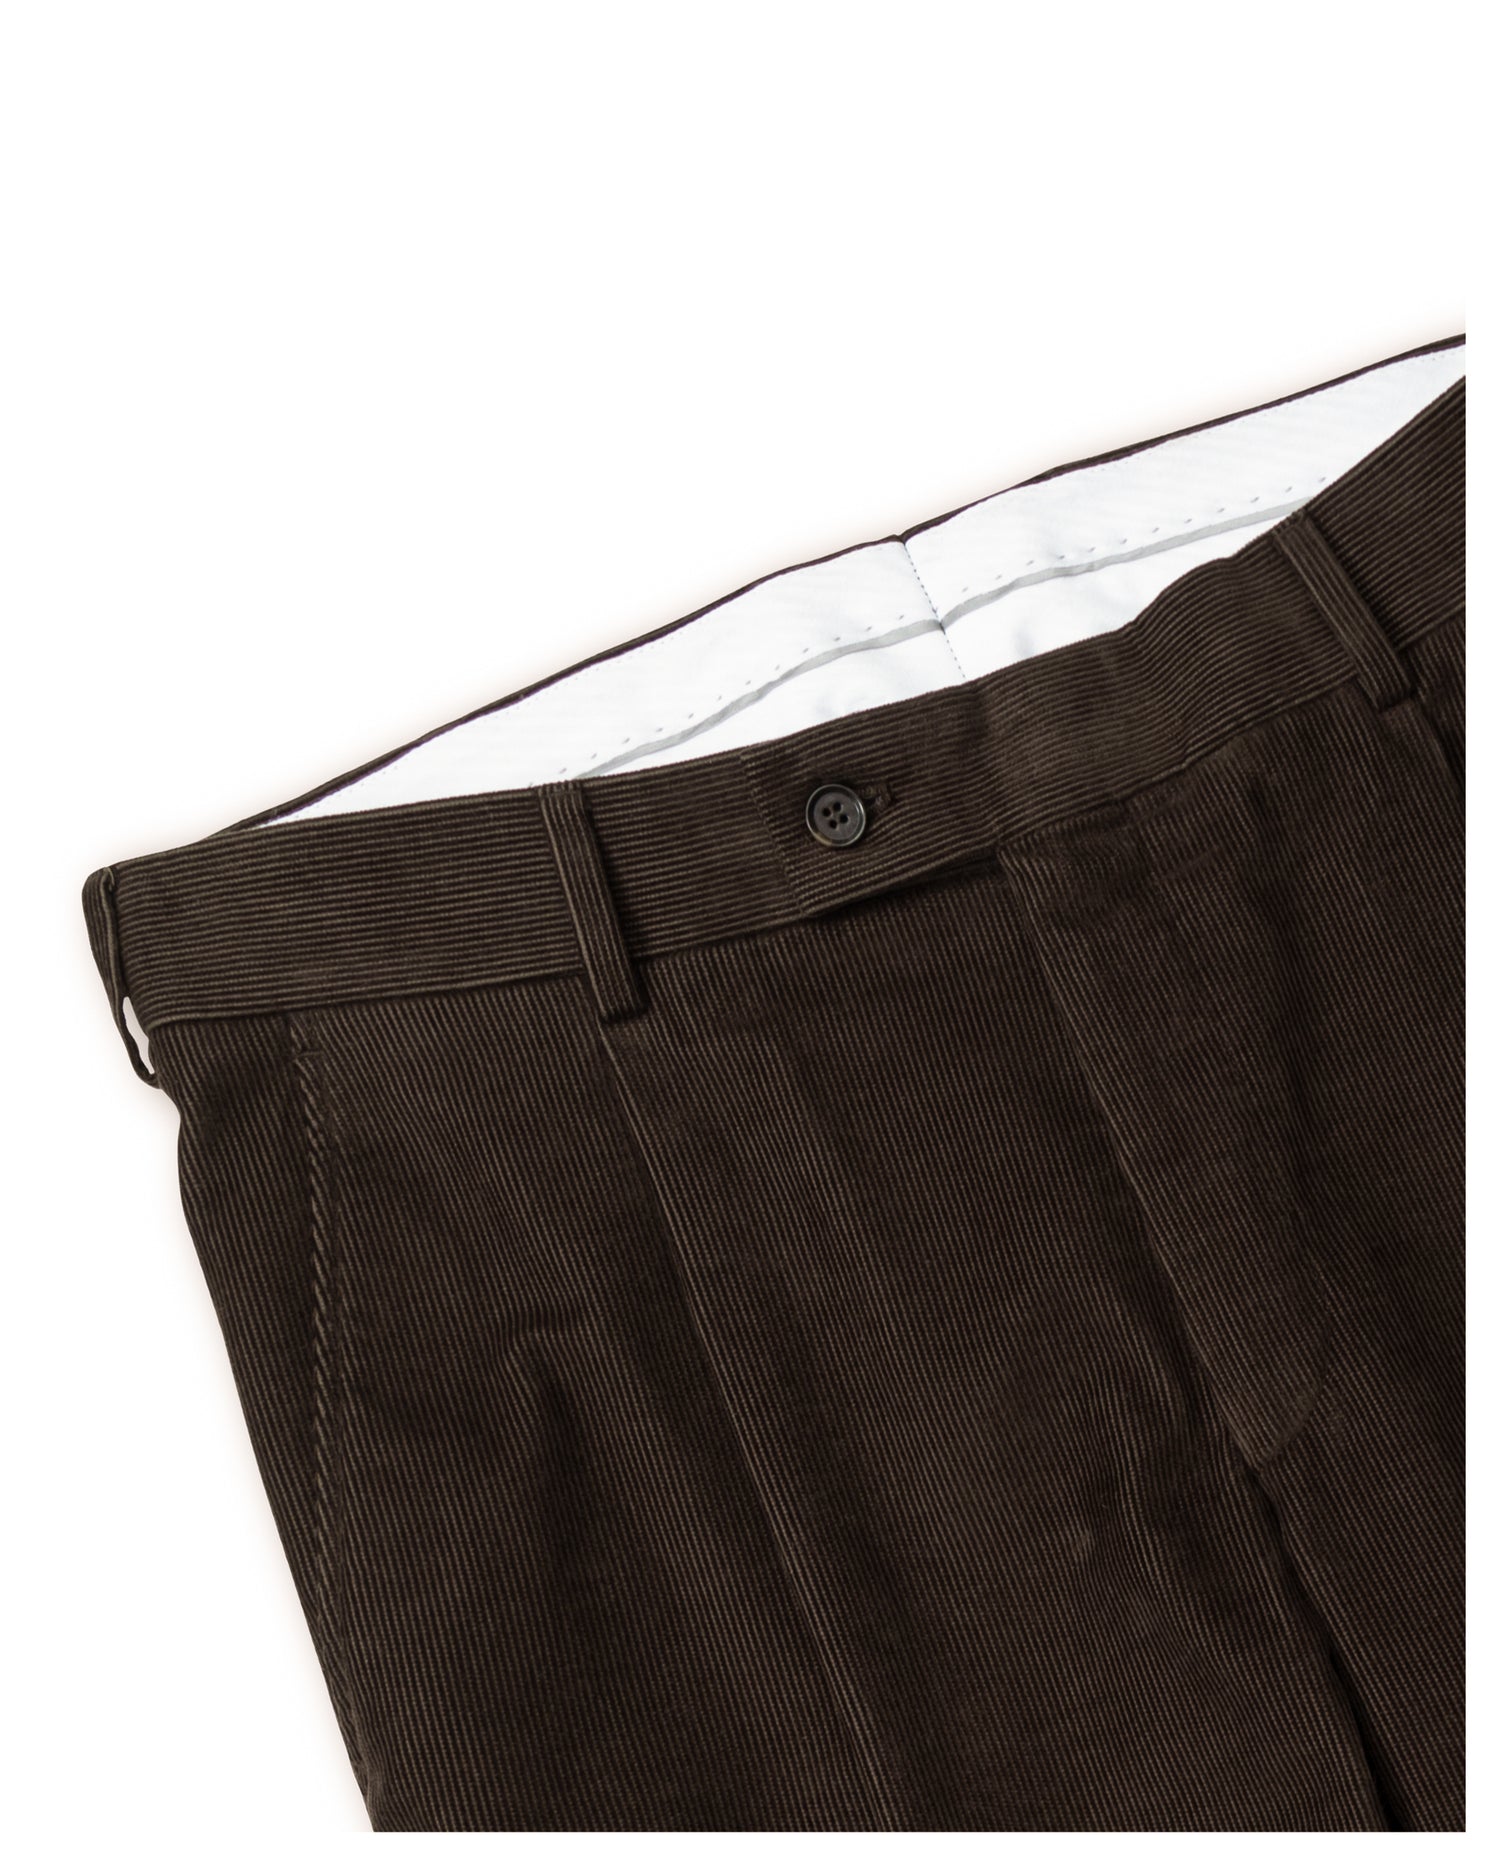 Brown Corduroy Trousers in Slim fit (8456776319306)